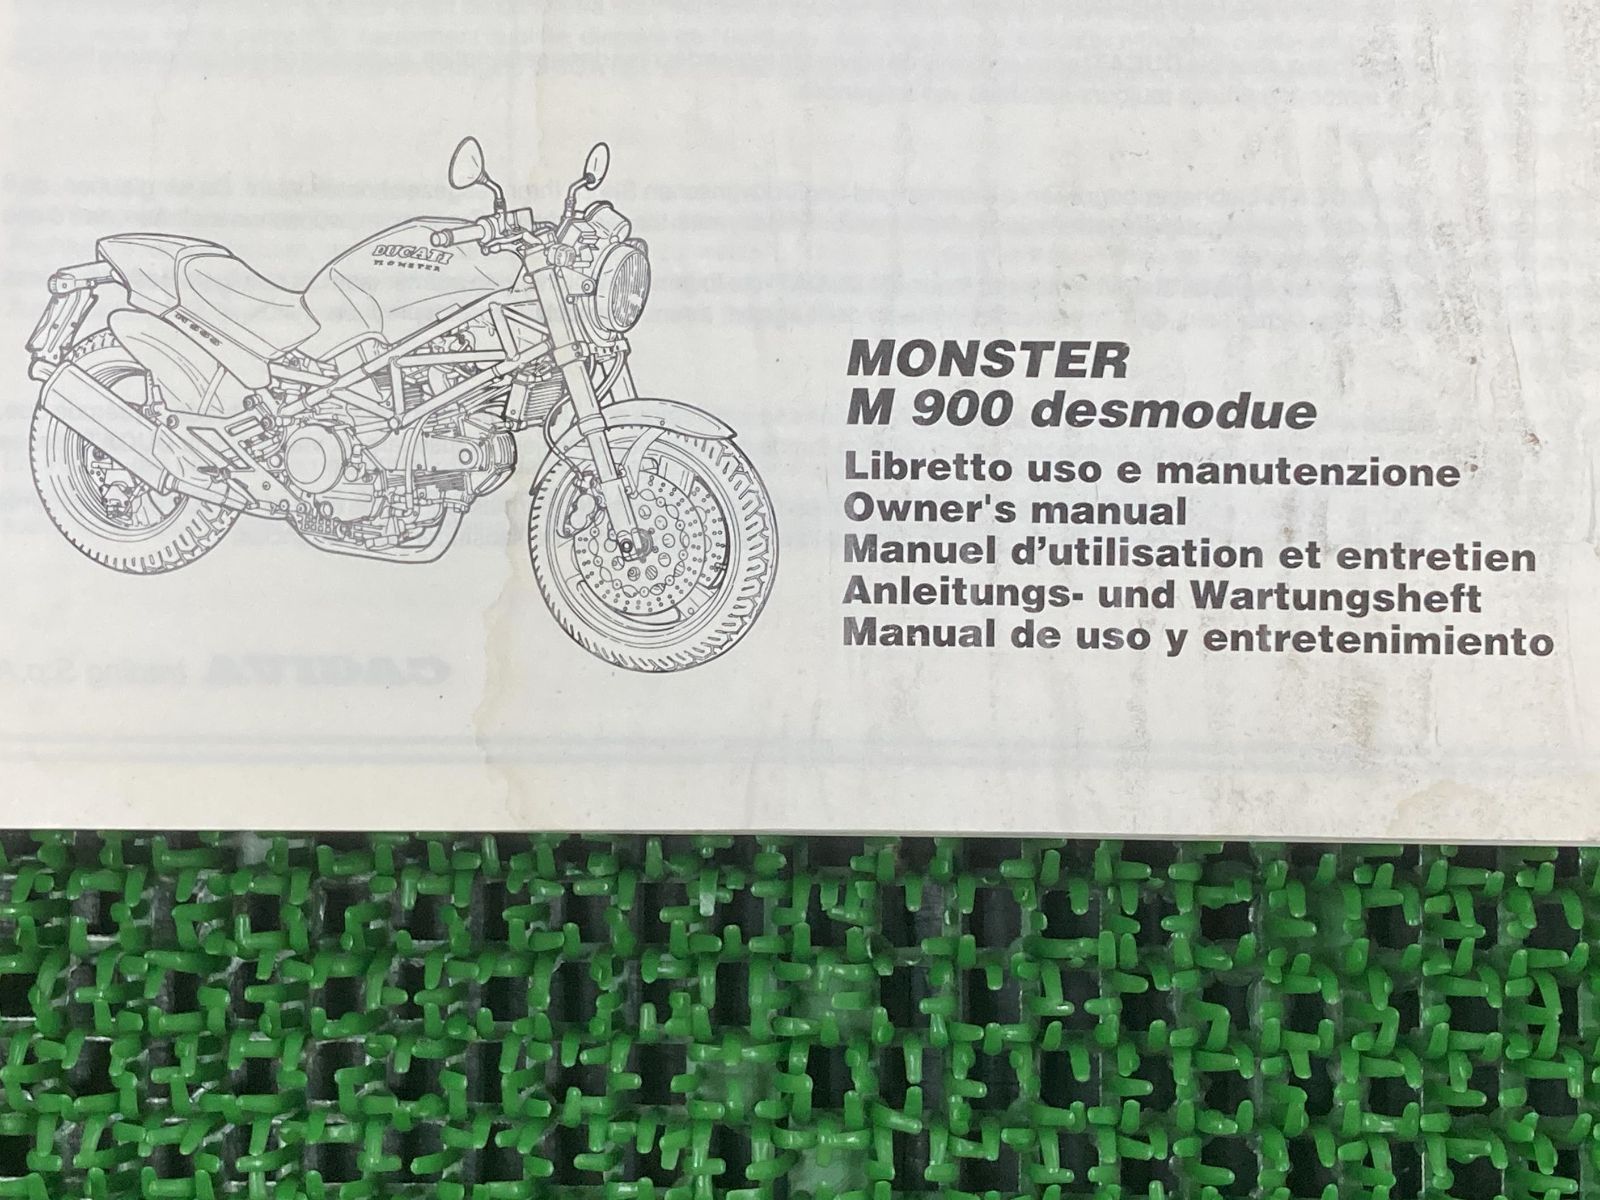 モンスターM900デスモデュエ 取扱説明書 ドゥカティ 正規 中古 バイク 整備書 配線図有り desmodue DUCATI 英・伊・仏・西・独語